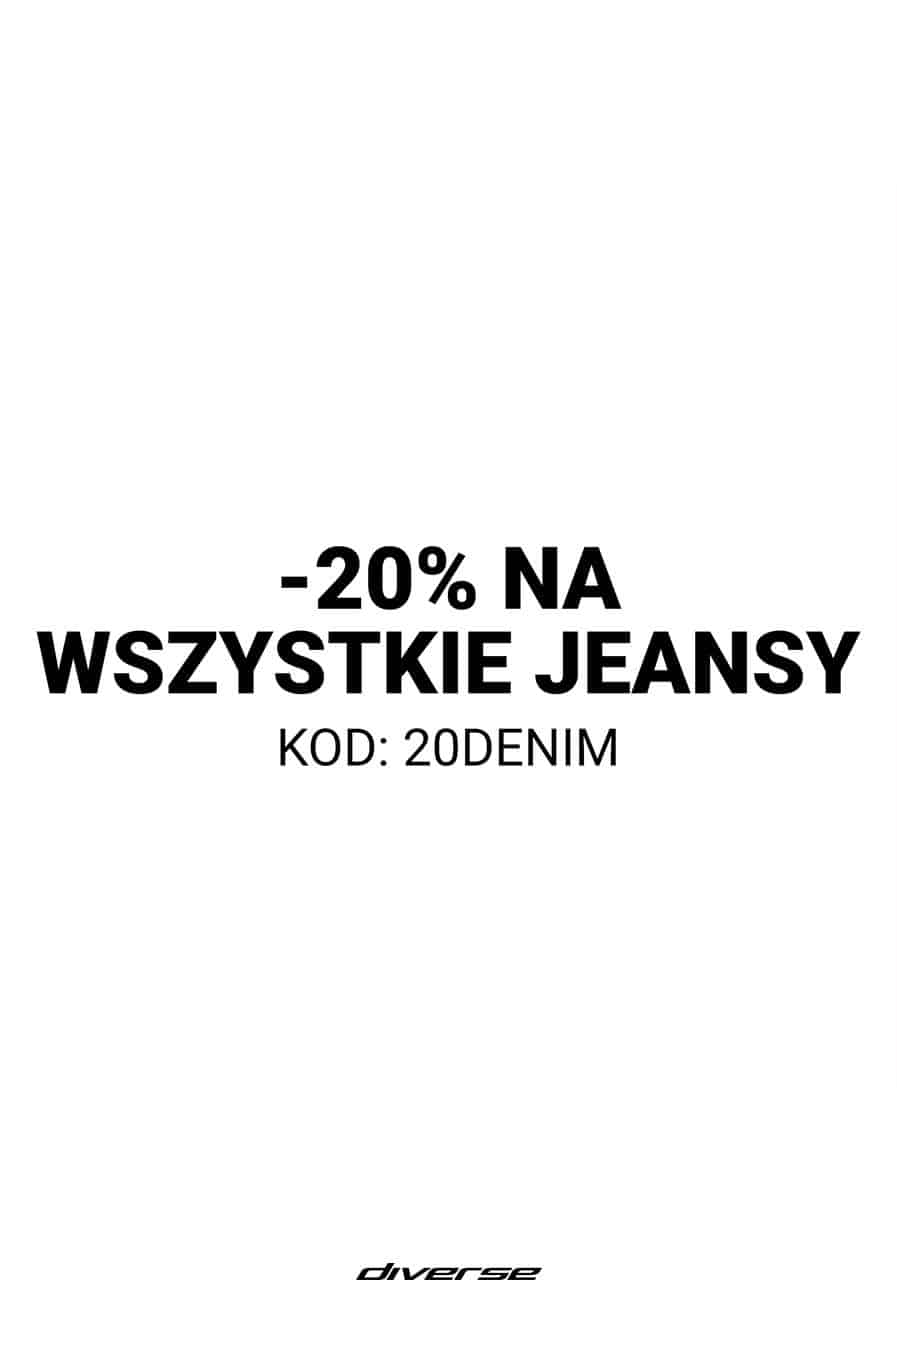 -20% na jeansy w diverse, -20% na wszystkie jeansy W DIVERSE w Tkalni Pabianice!